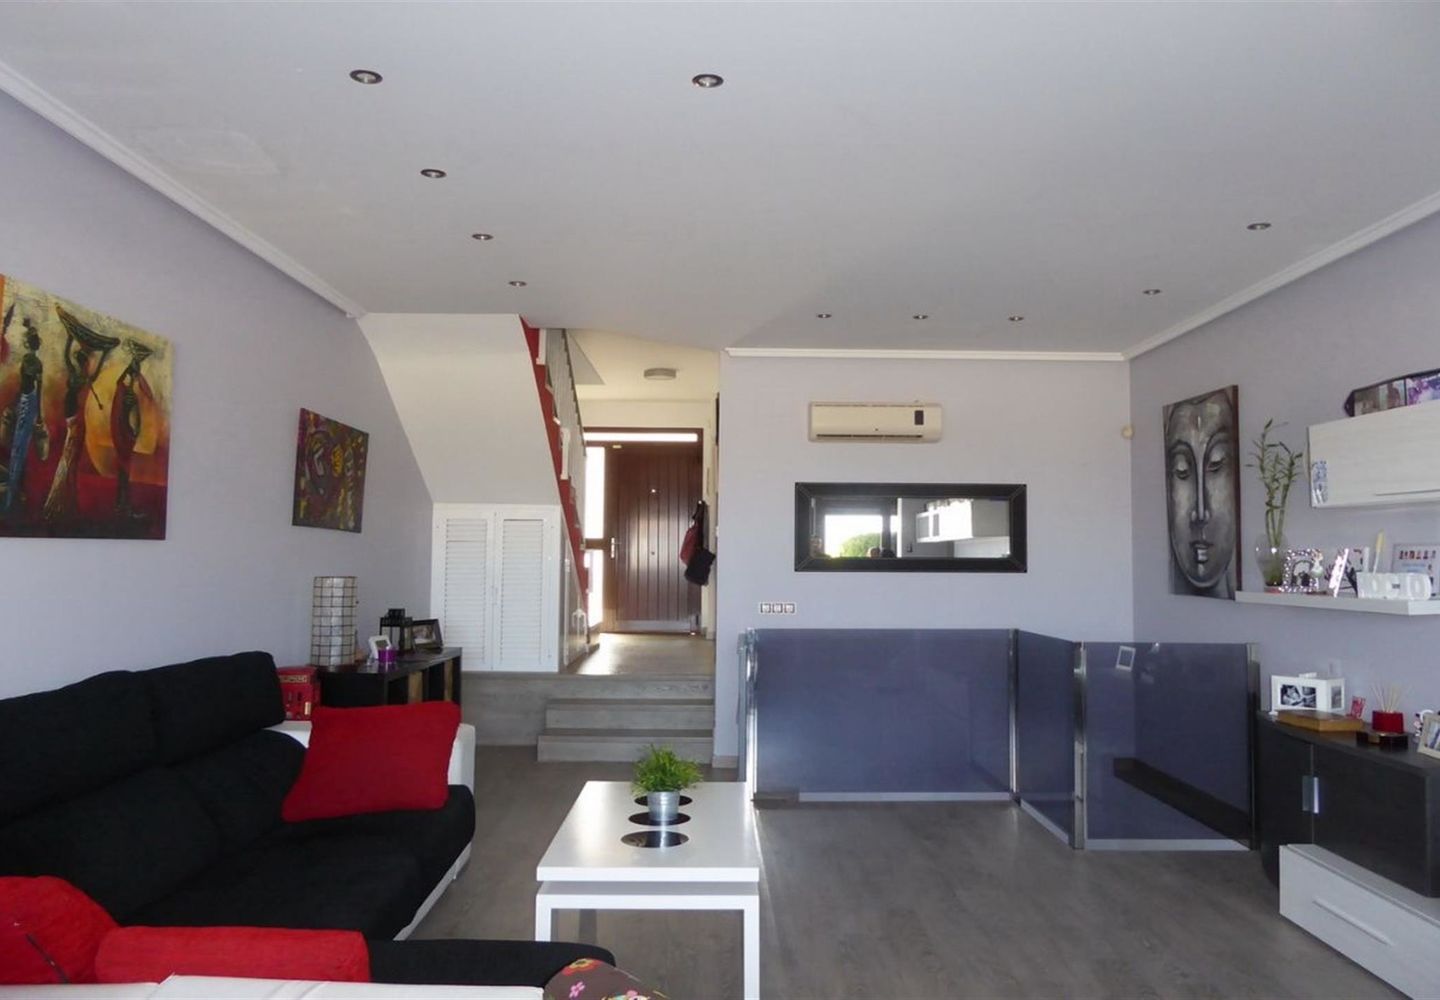 CASALINA ESPANA stelt te koop gerenoveerde villa(2015) van 112 m² in Polop, Costa Blanca Noord, met bergzicht. Polop is de metropool in de comarcra van Marina Baixa in Alicante en deelt de grens met Callosa d’en Sarria geholpen door de rivier Guadalest